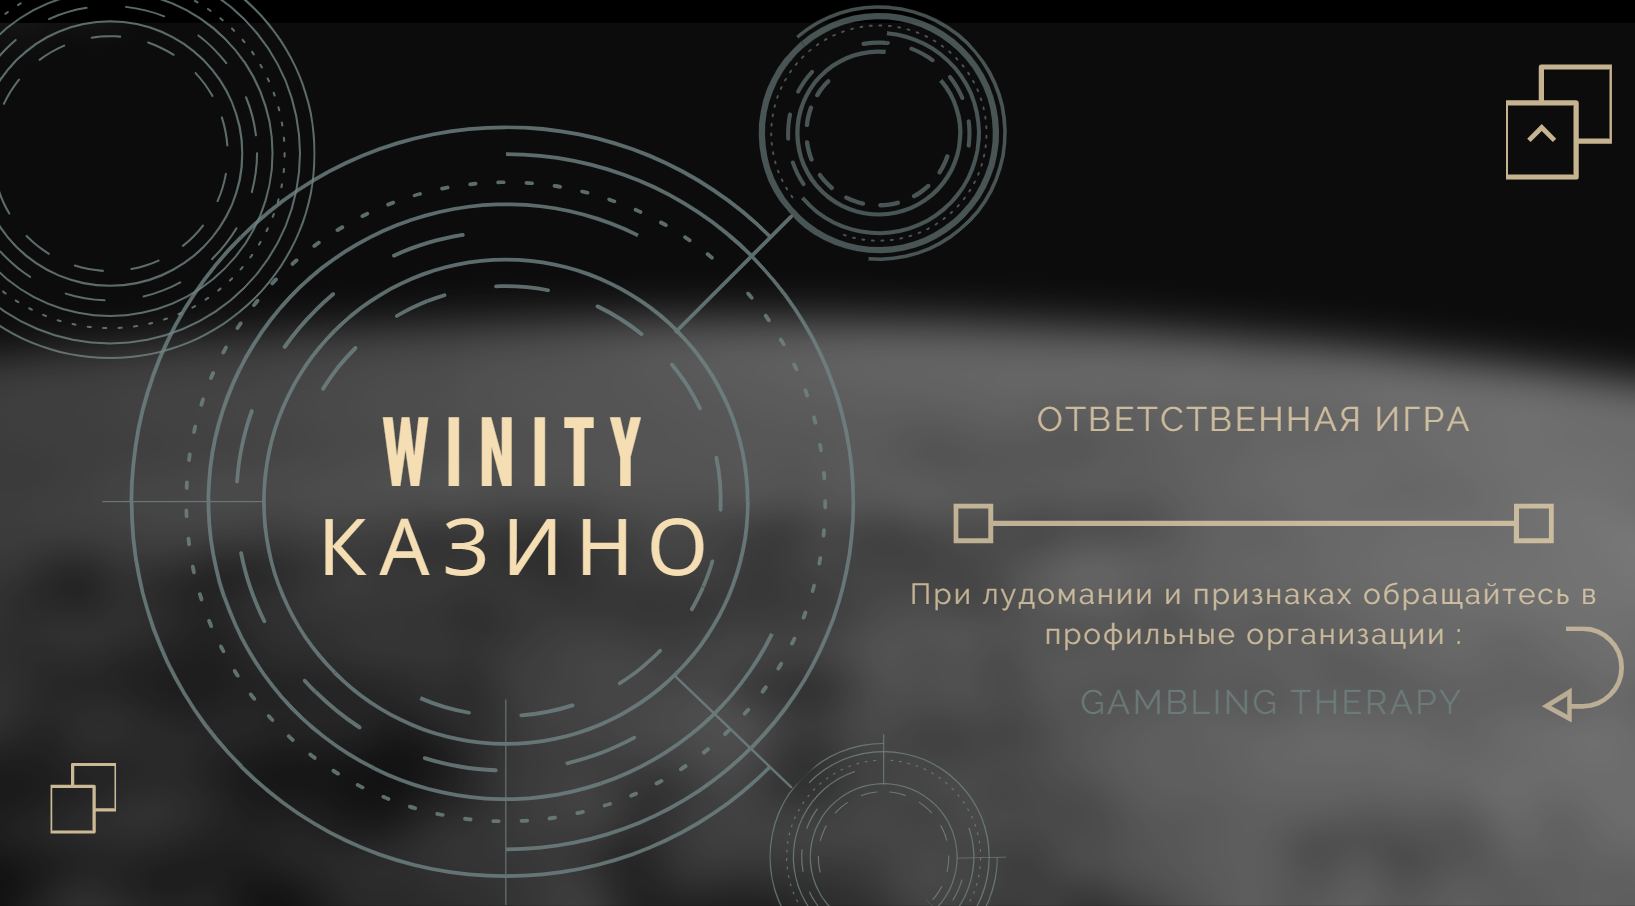 Winity Casino ответственная игра - нет лудомании